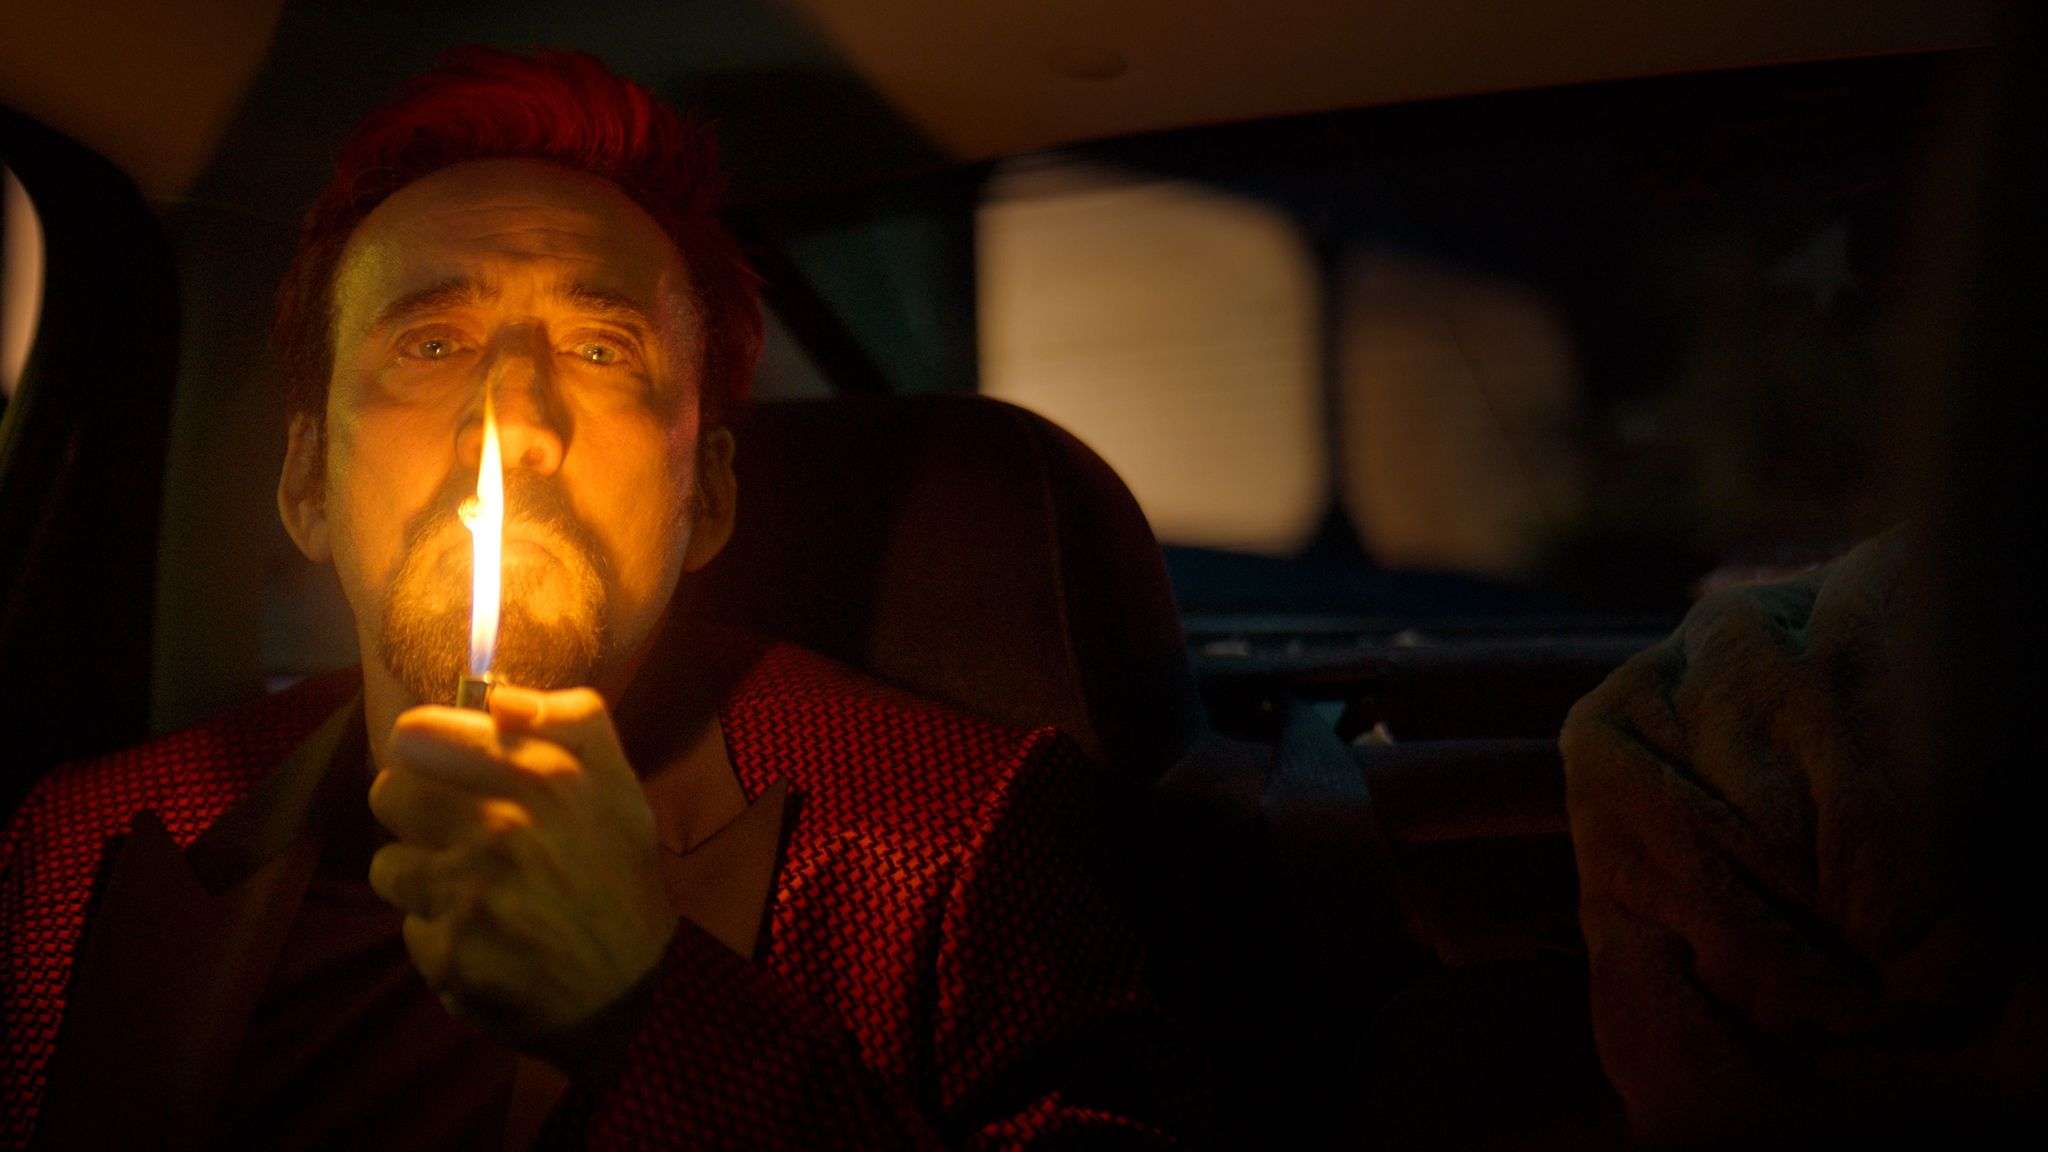 نیکلاس کیج در نقش مسافر در حال سیگار کشیدن در فیلم Sympathy for the Devil